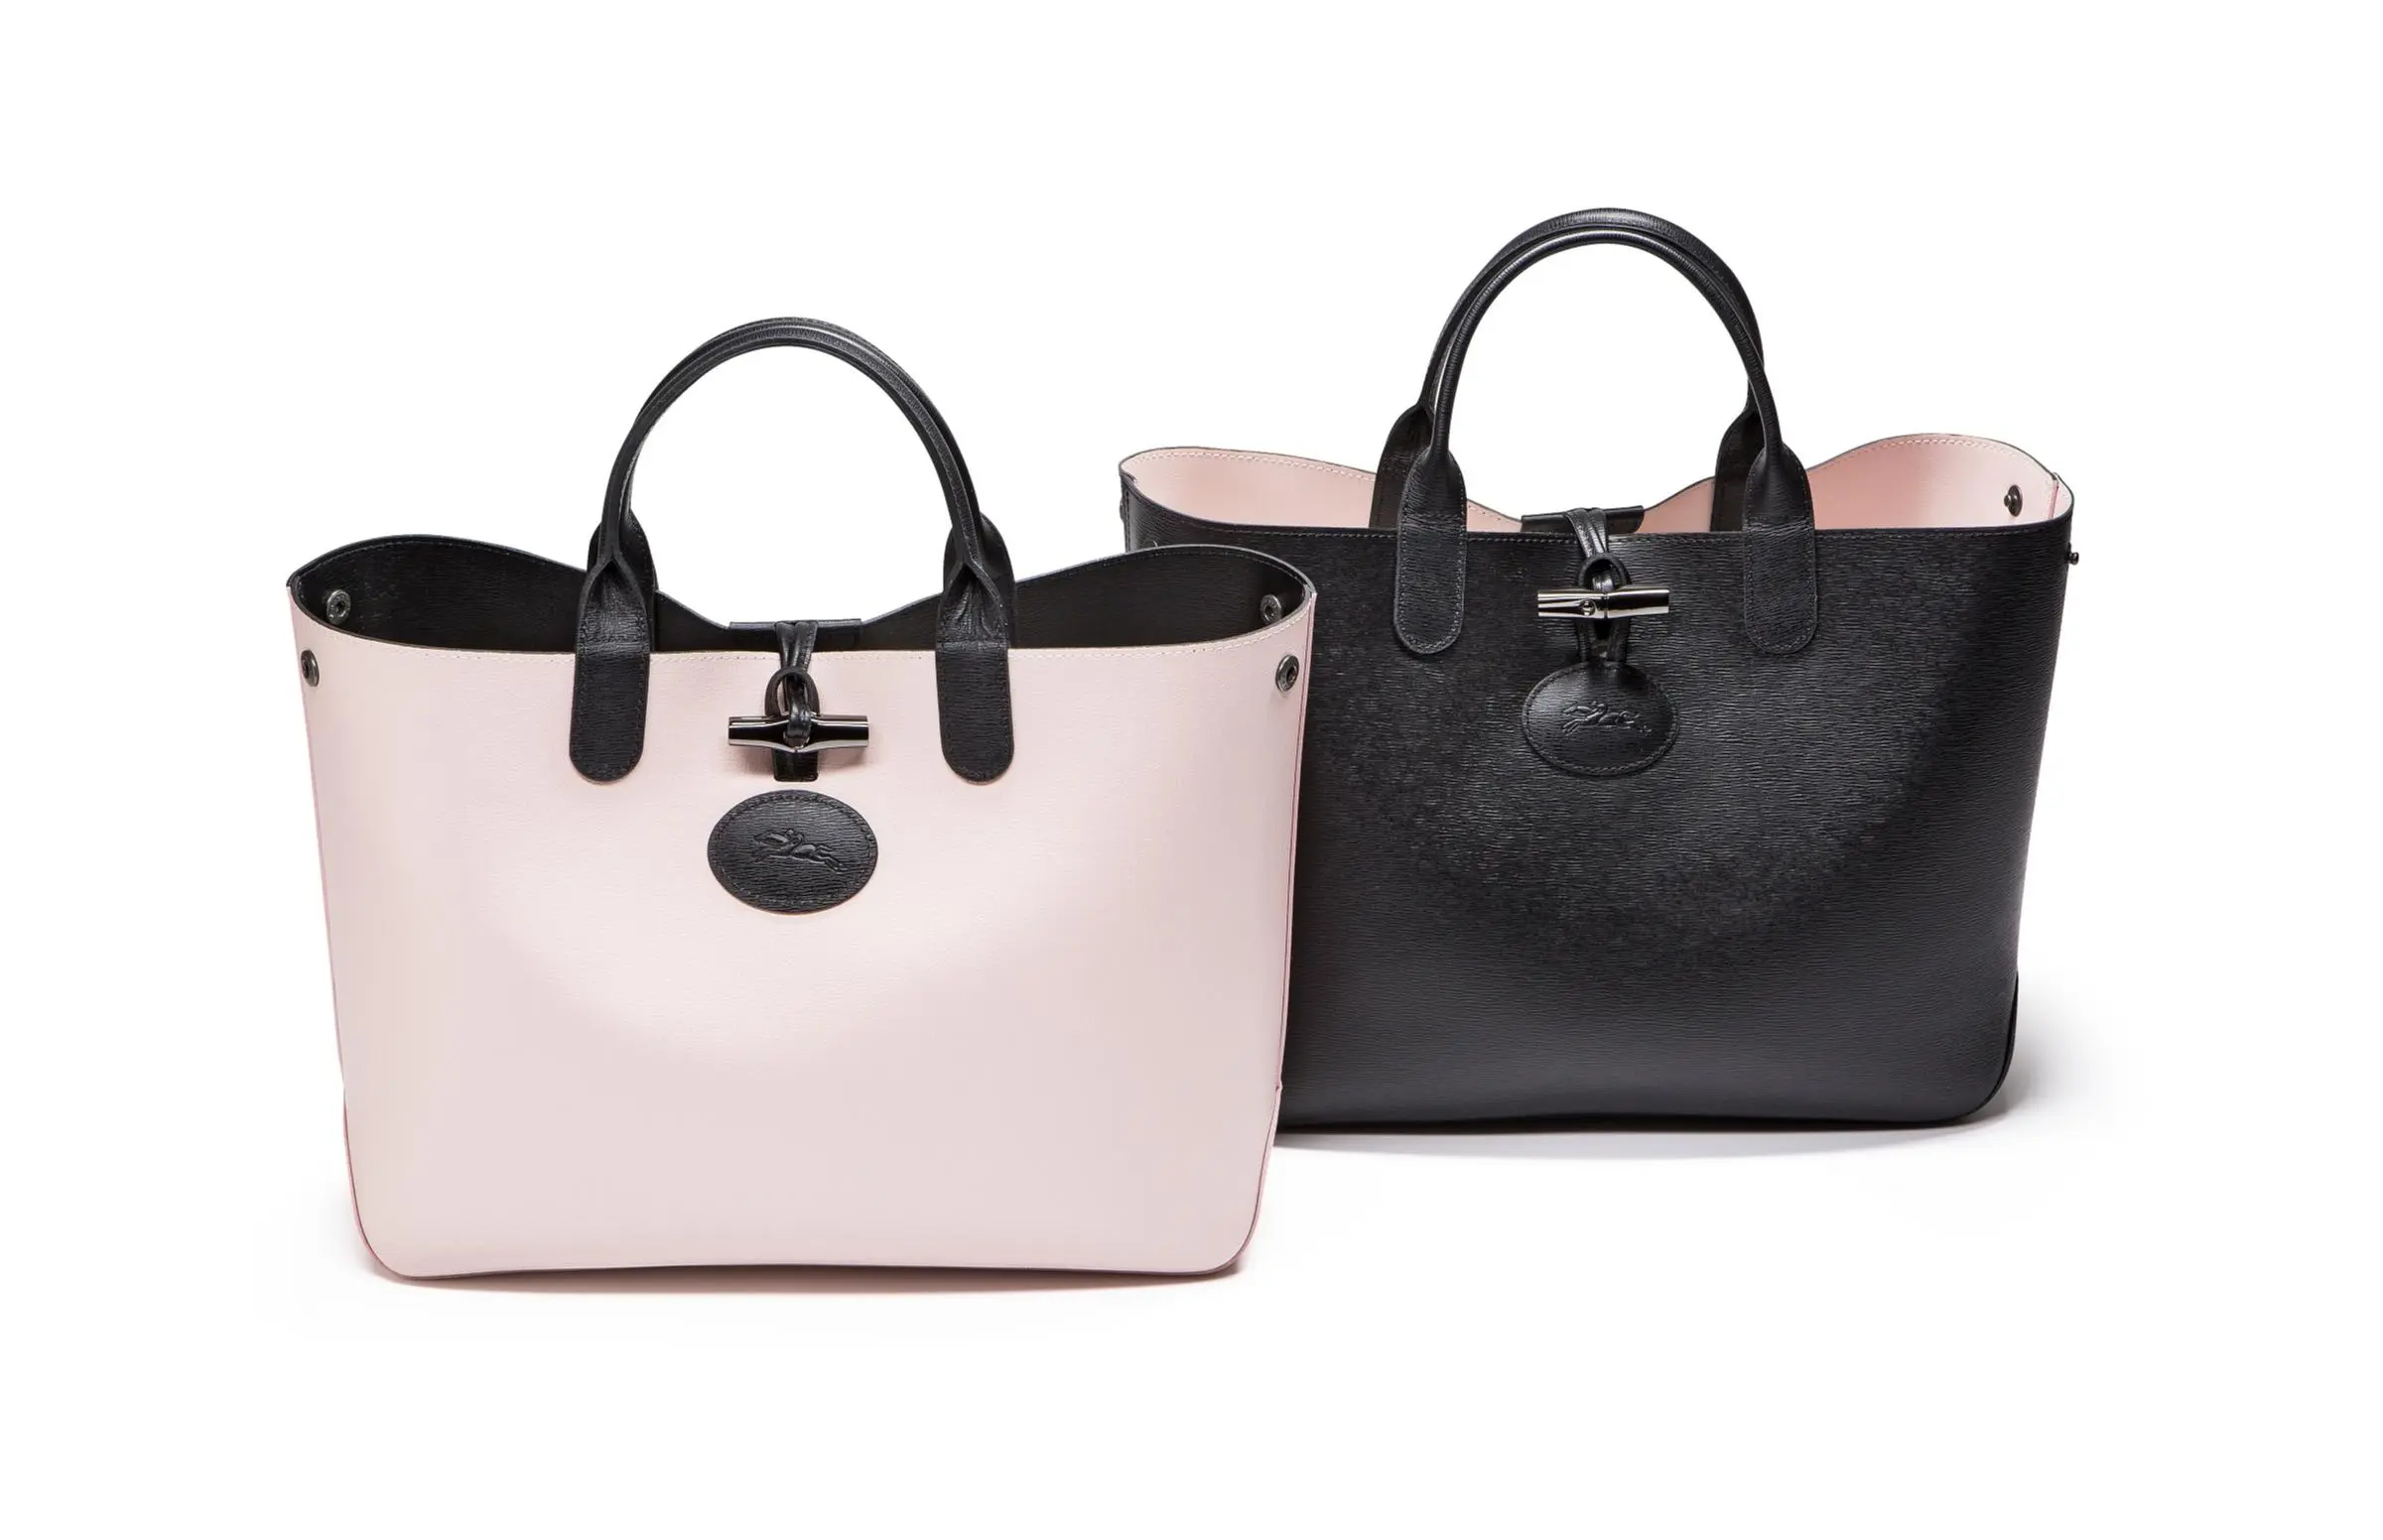 ロンシャン の新作バッグは こんなにキレイなのにリバーシブル ファッション コーディネート 代 Daily More